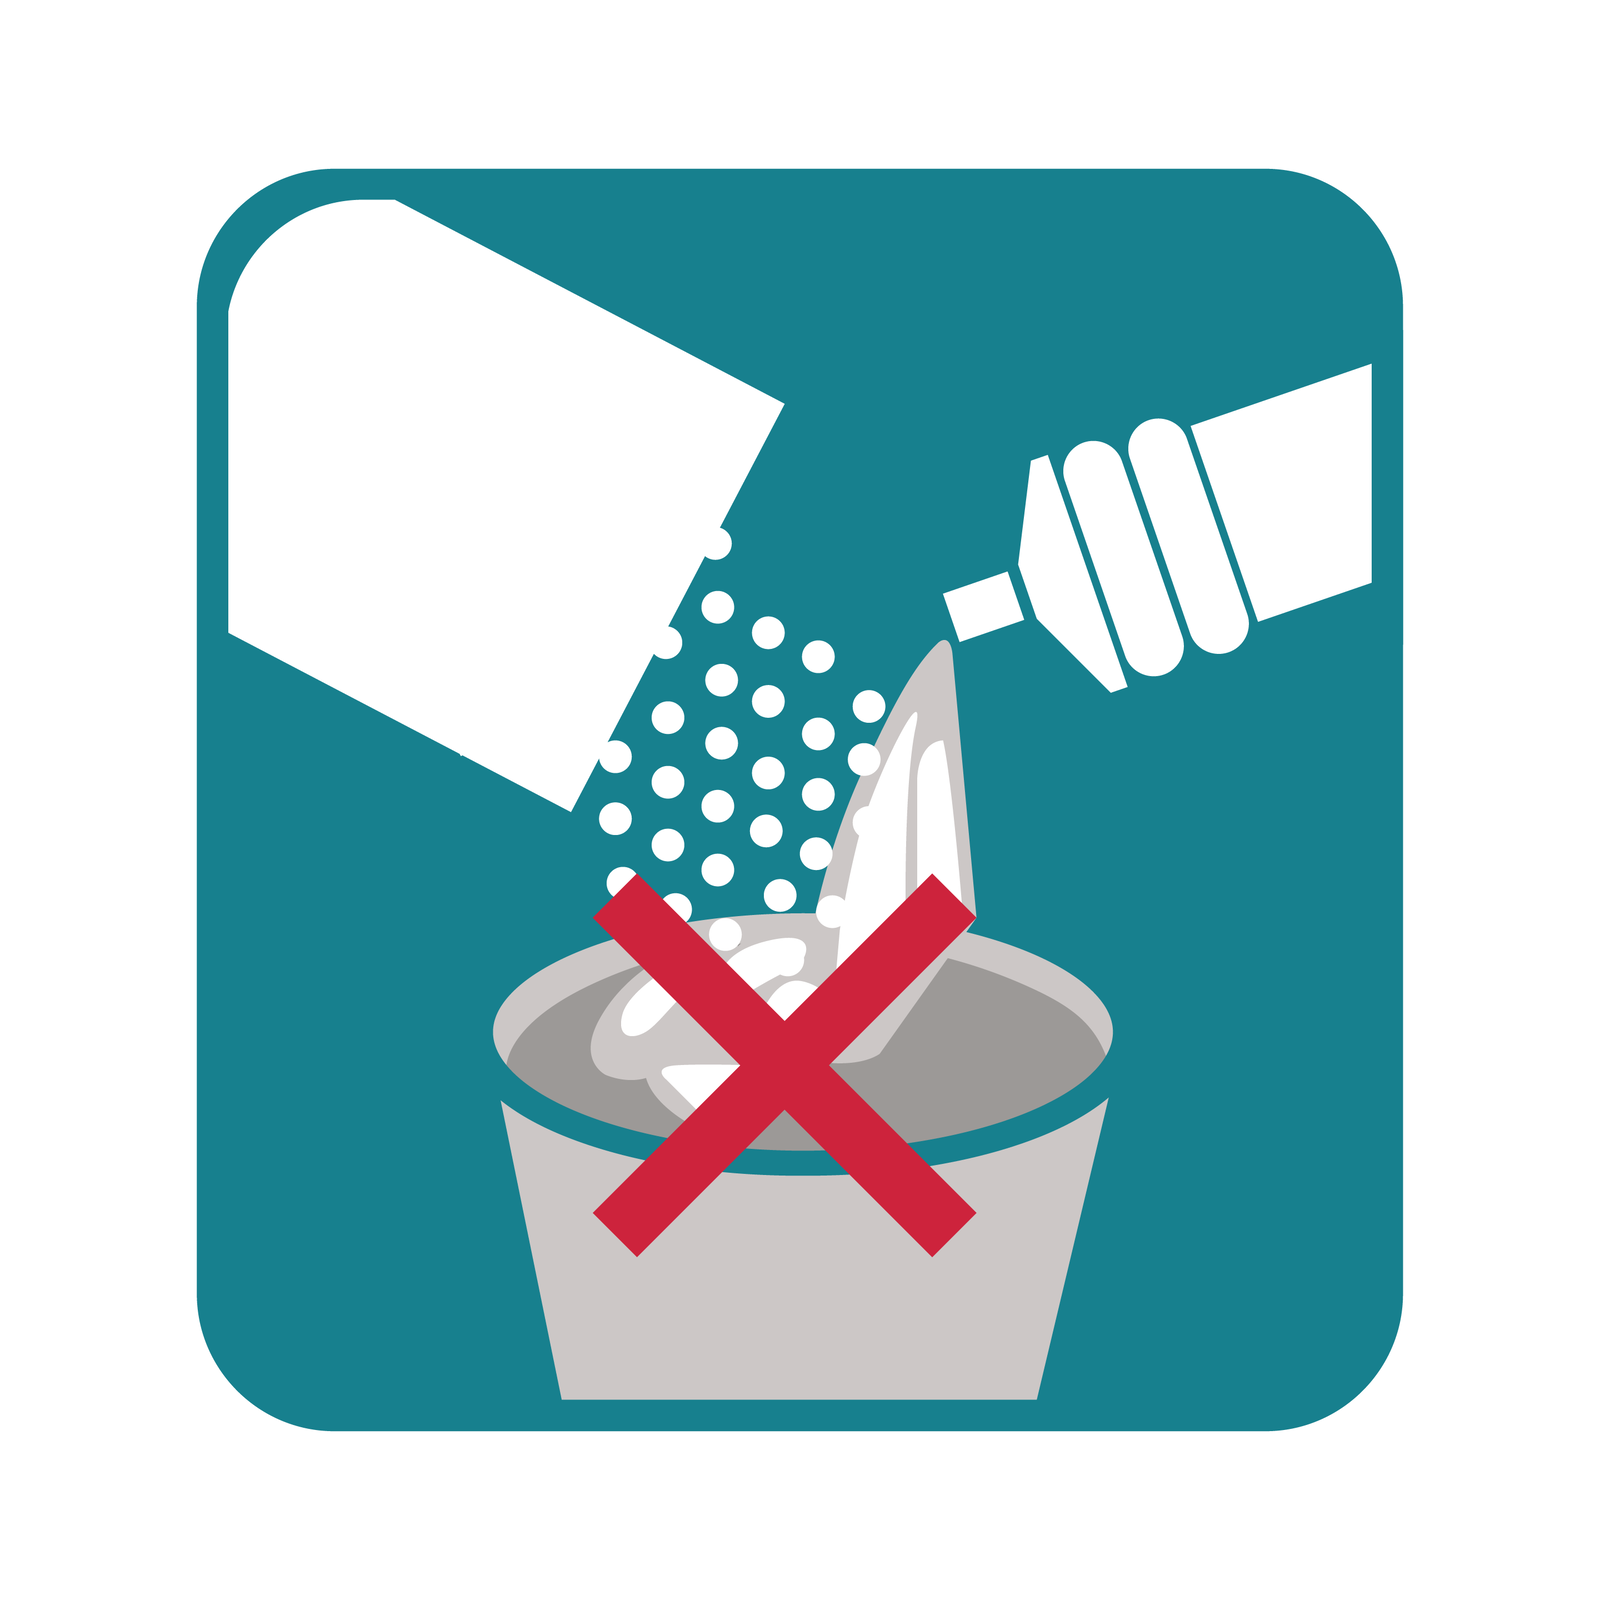 Ilustracja prezentuje wzór ostrzeżenia na opakowaniach środków czystości. Składa się z symbolu pudełka z proszkiem oraz butelki z płynem, których zawartość trafia do pojemnika. Na pojemniku znajduje się czerwony symbol x.